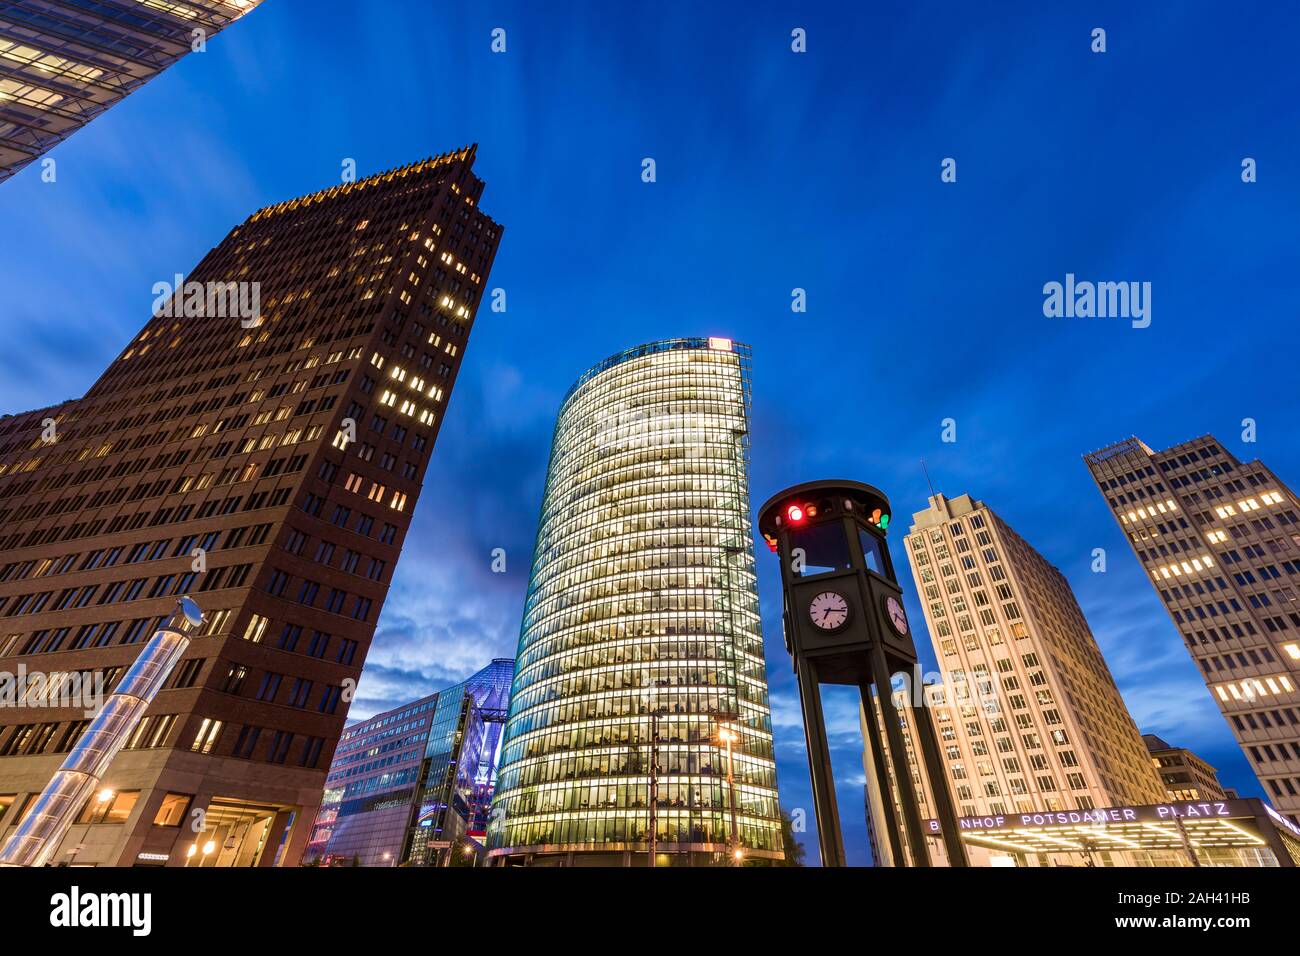 Alemania, Berlín Mitte, Potsdamer Platz, el Kollhoff-Tower, Bahntower, Beisheim-Center, ángulo de visión baja de los rascacielos al atardecer Foto de stock